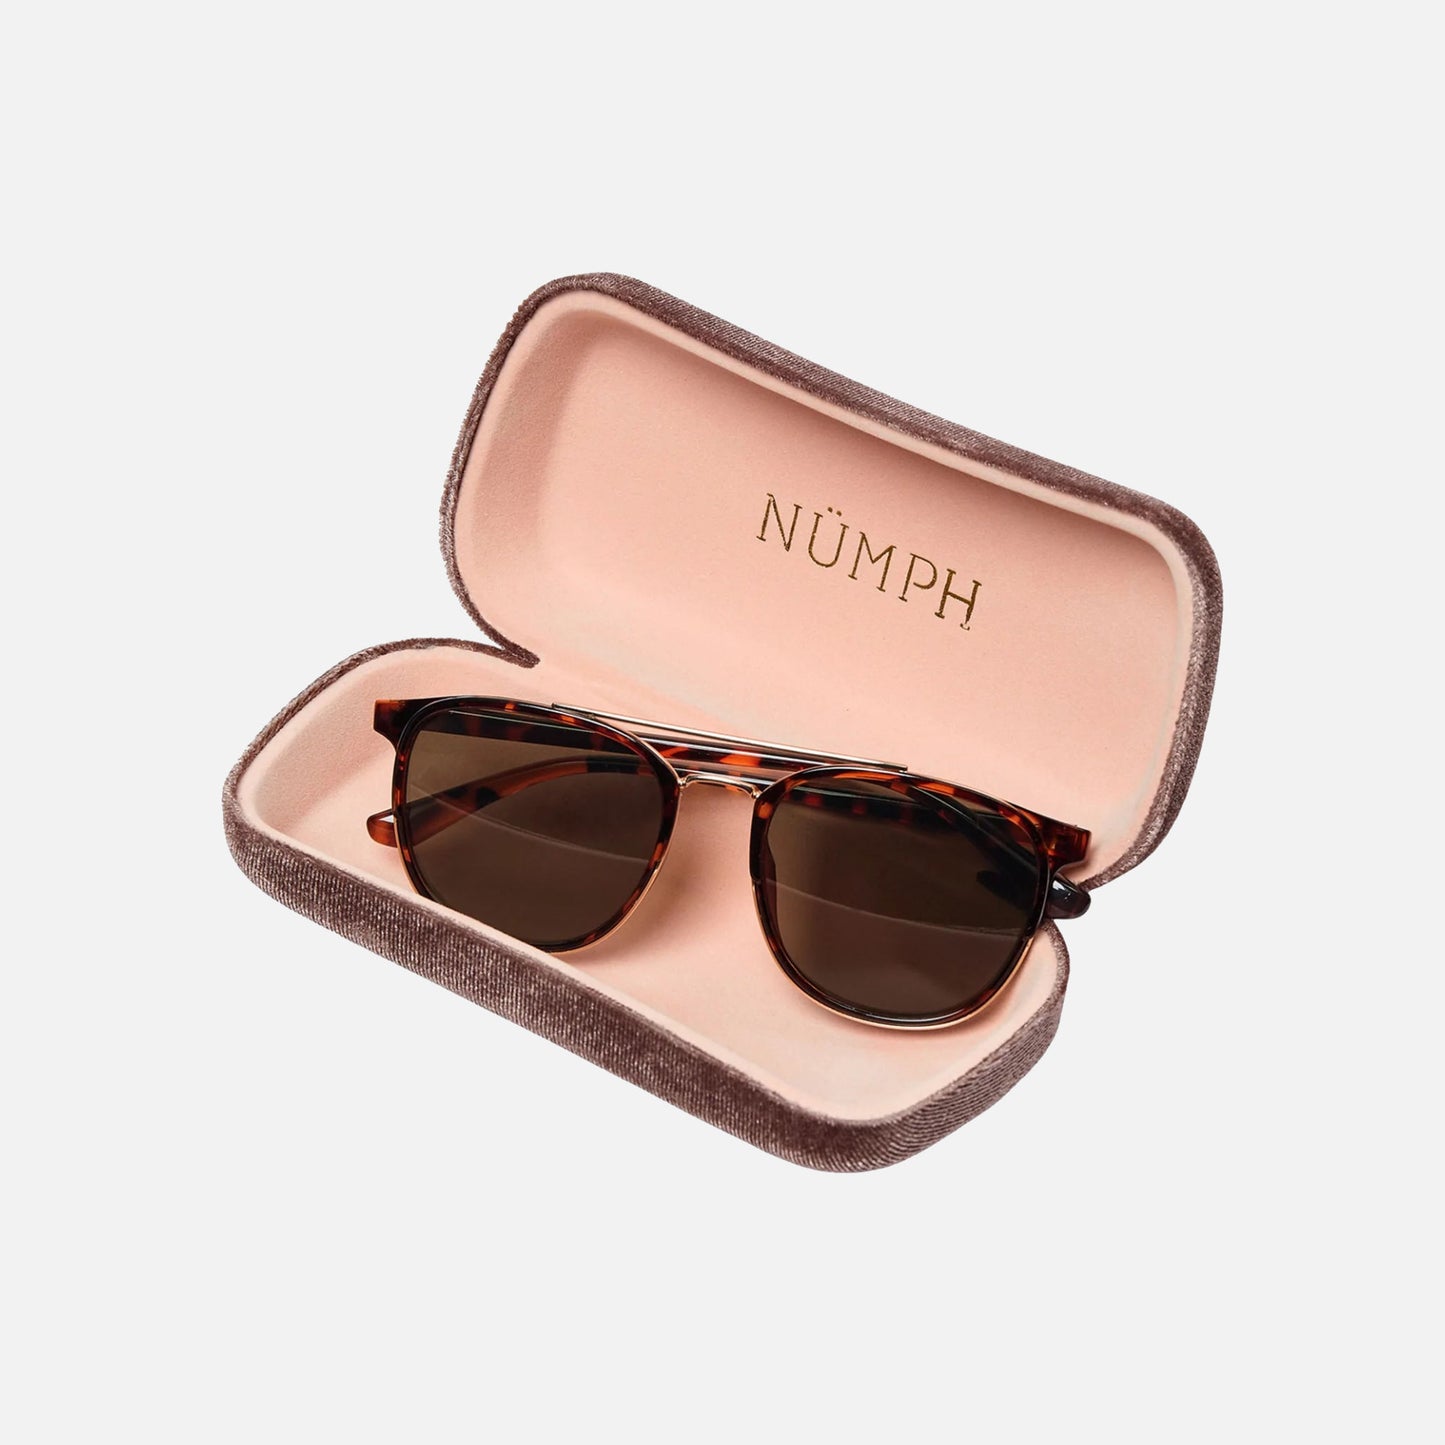 Nuamila solbriller fra Nümph (med etui)